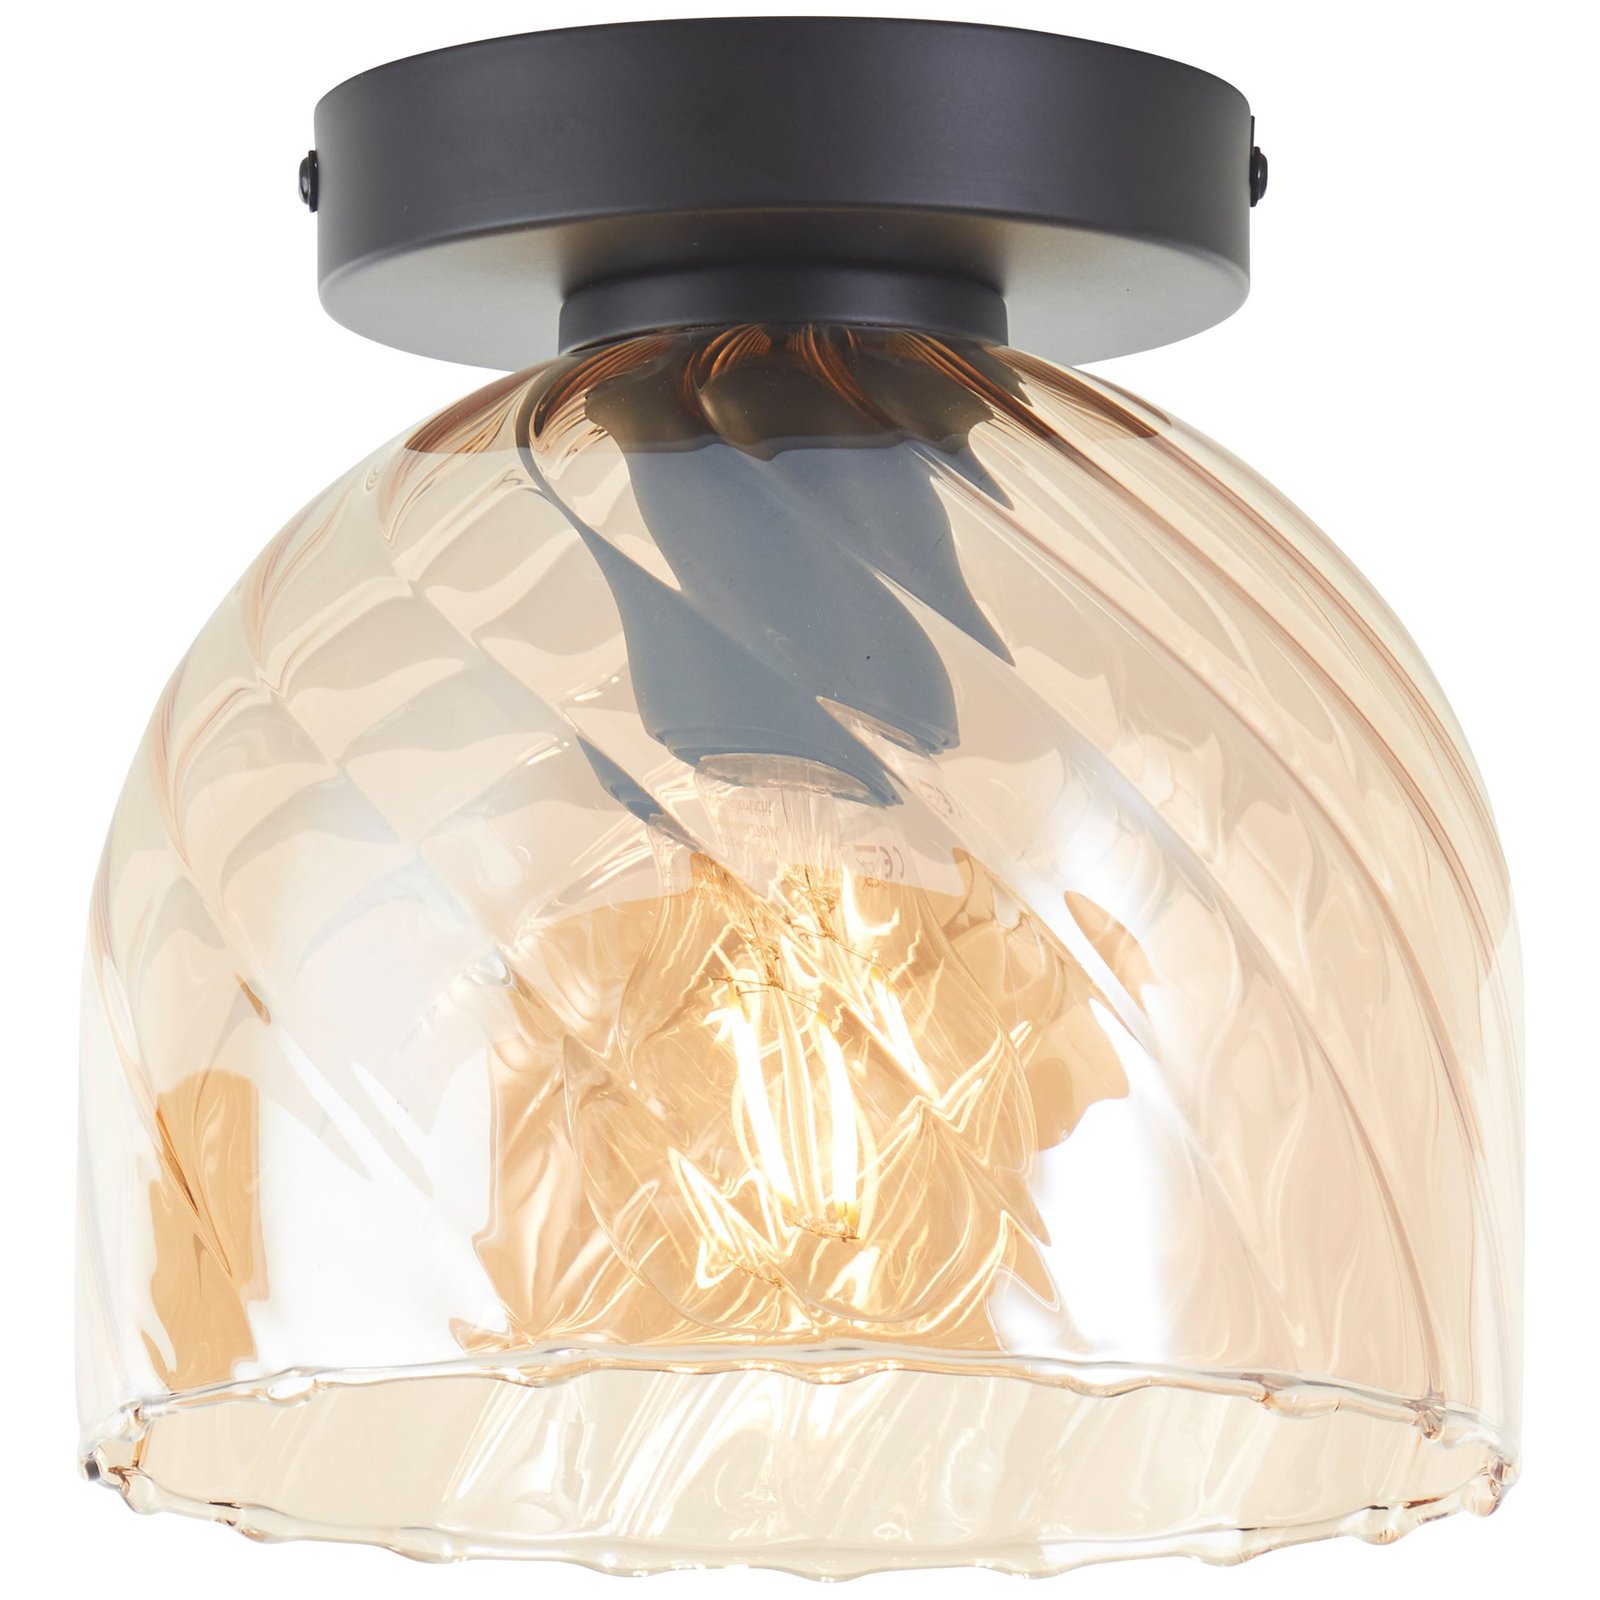 Deckenlampe Casto, Ø 19 cm, bernstein, Glas